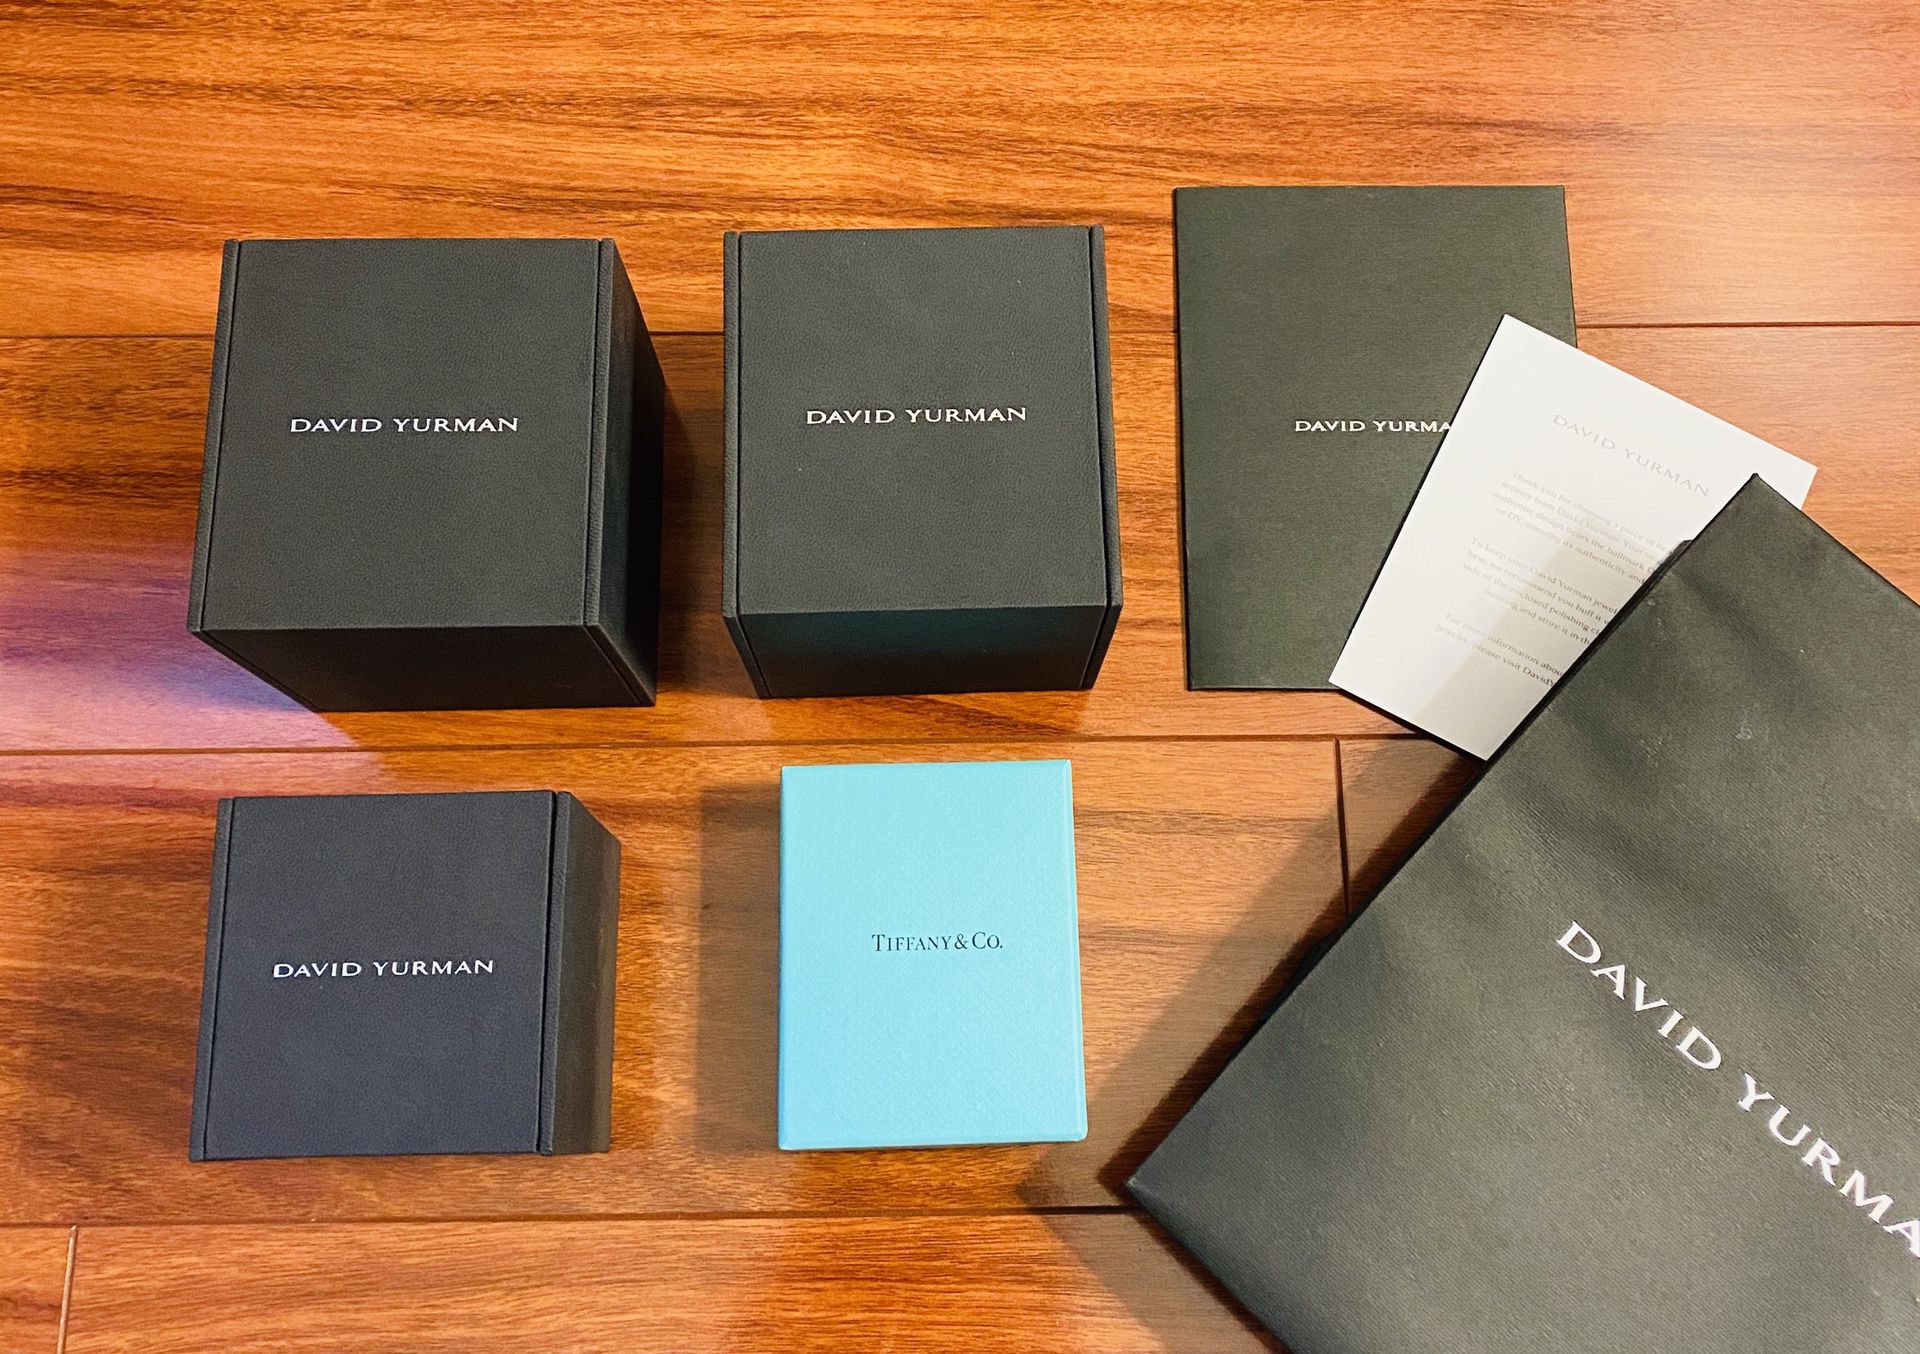 David Yurman & Tiffany Jewelry Boxes (set of 4)